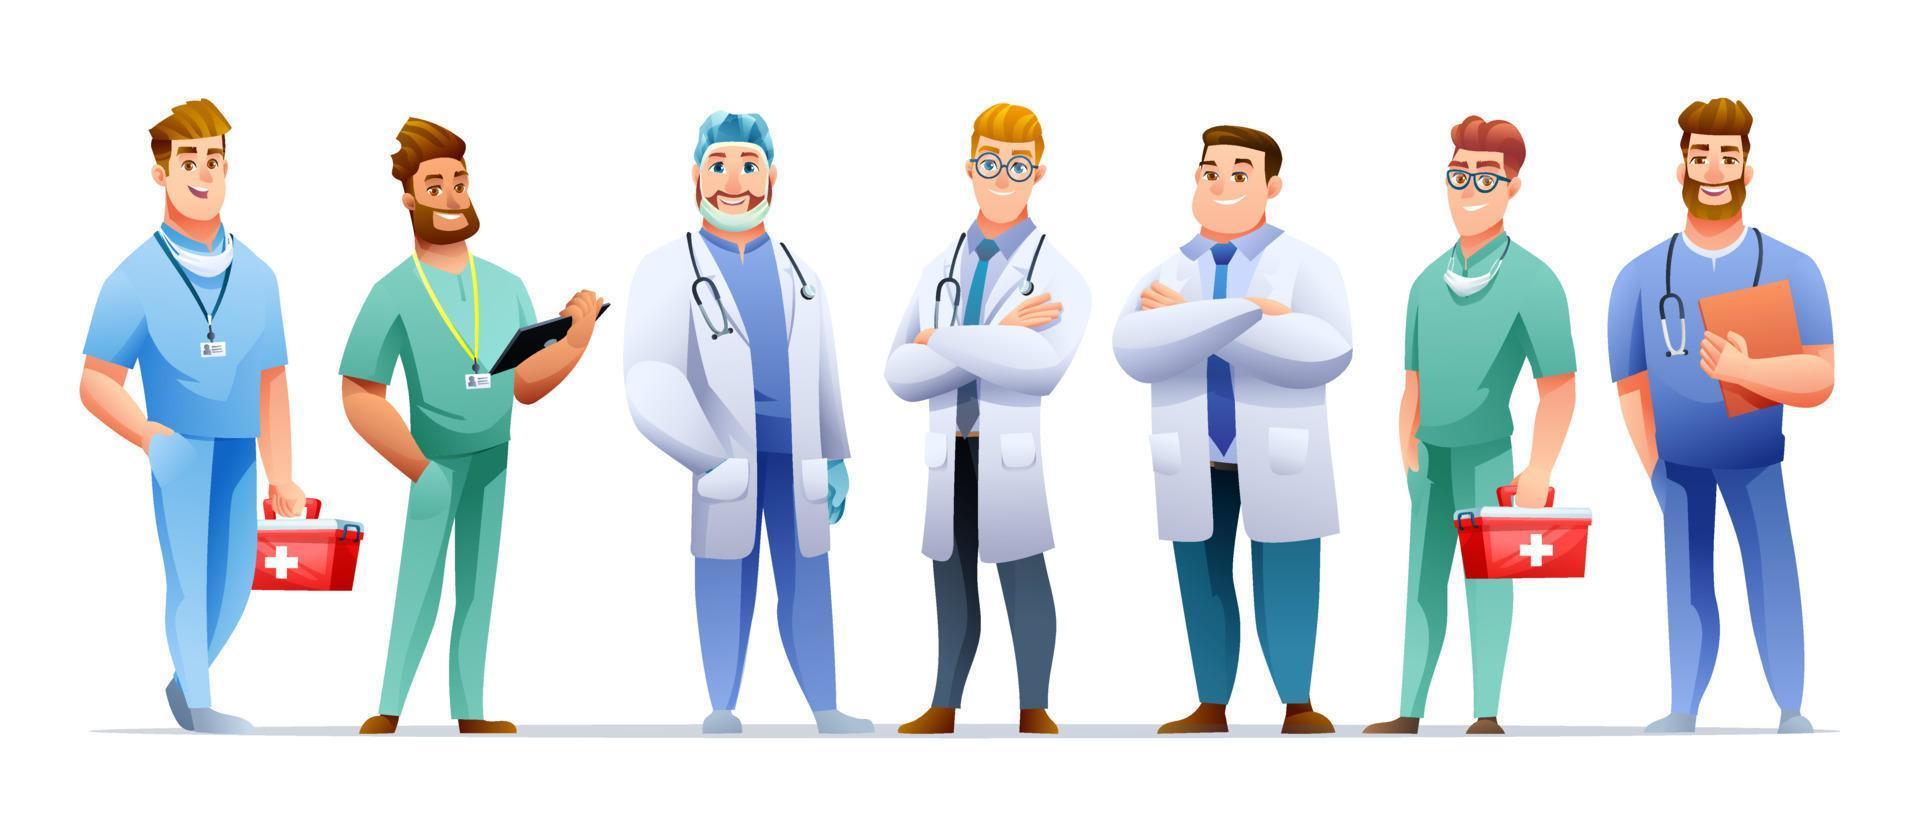 conjunto de personajes médicos y enfermeros masculinos en estilo de dibujos animados vector